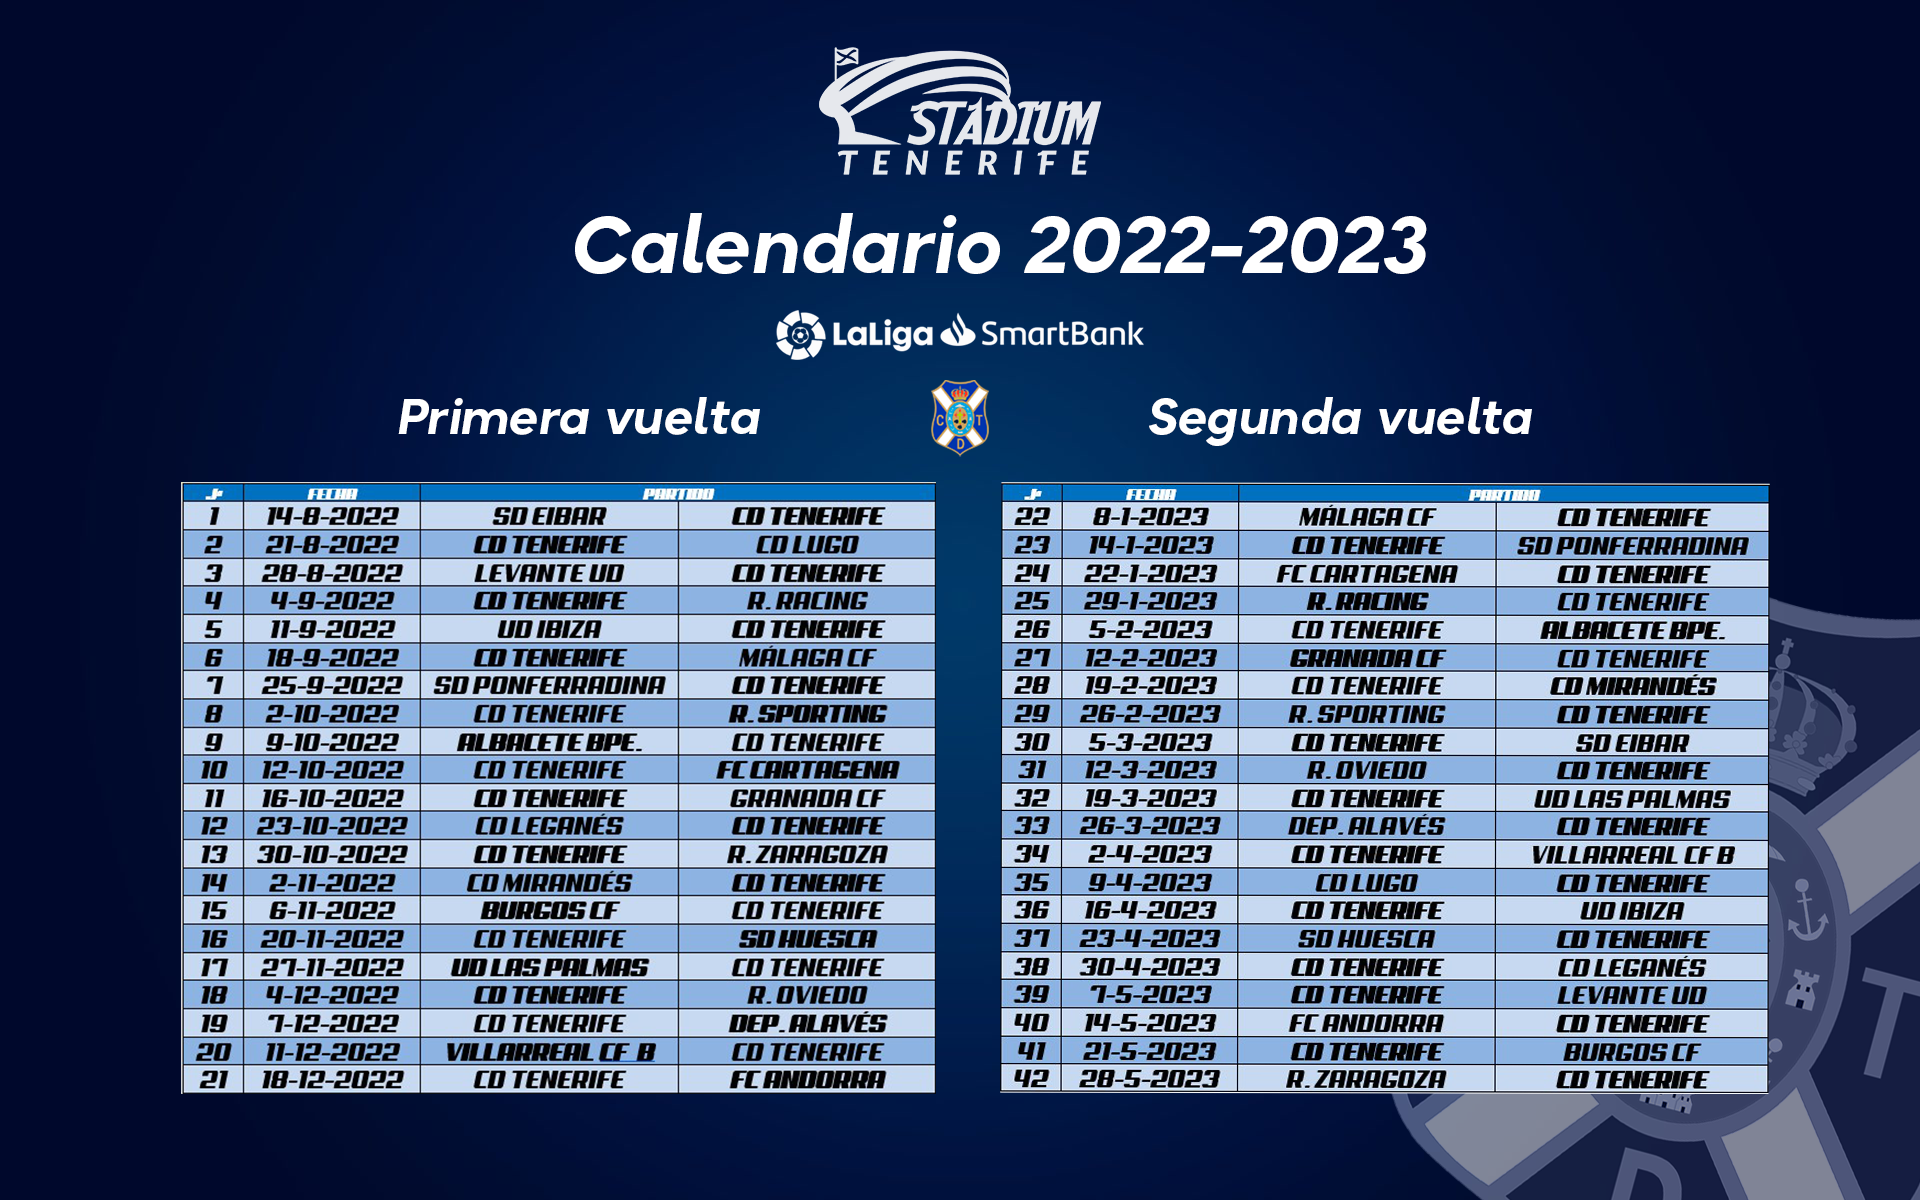 Tubería Hacer la vida impulso El CD Tenerife ya tiene calendario para la temporada 2022/2023 | Stadium  Tenerife